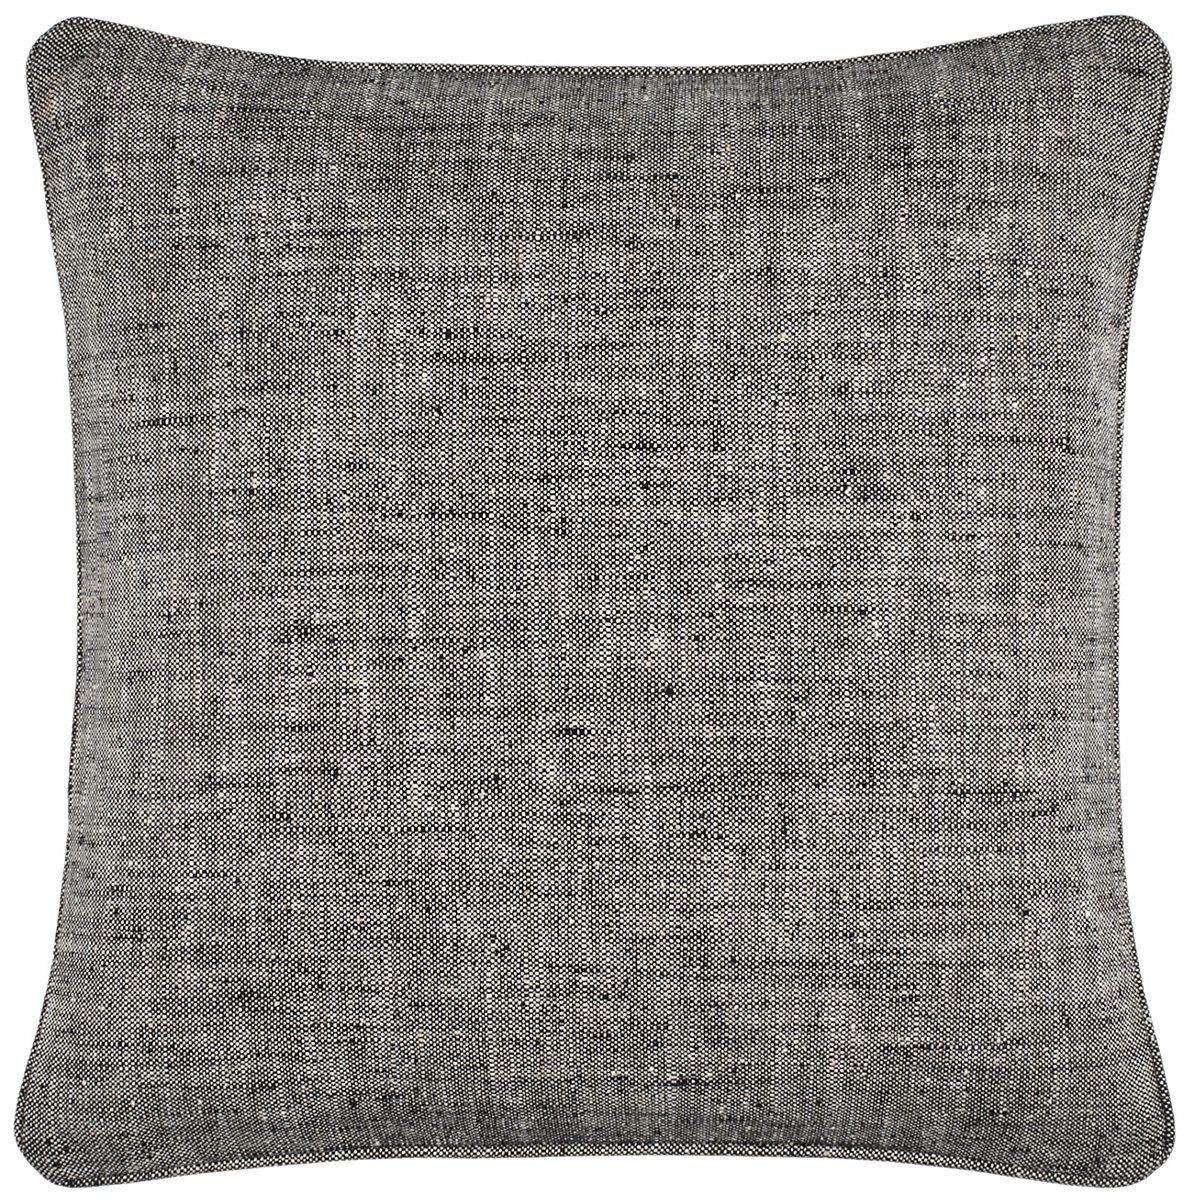 Greylock Black Indoor/Outdoor Decorative Pillow | Annie Selke